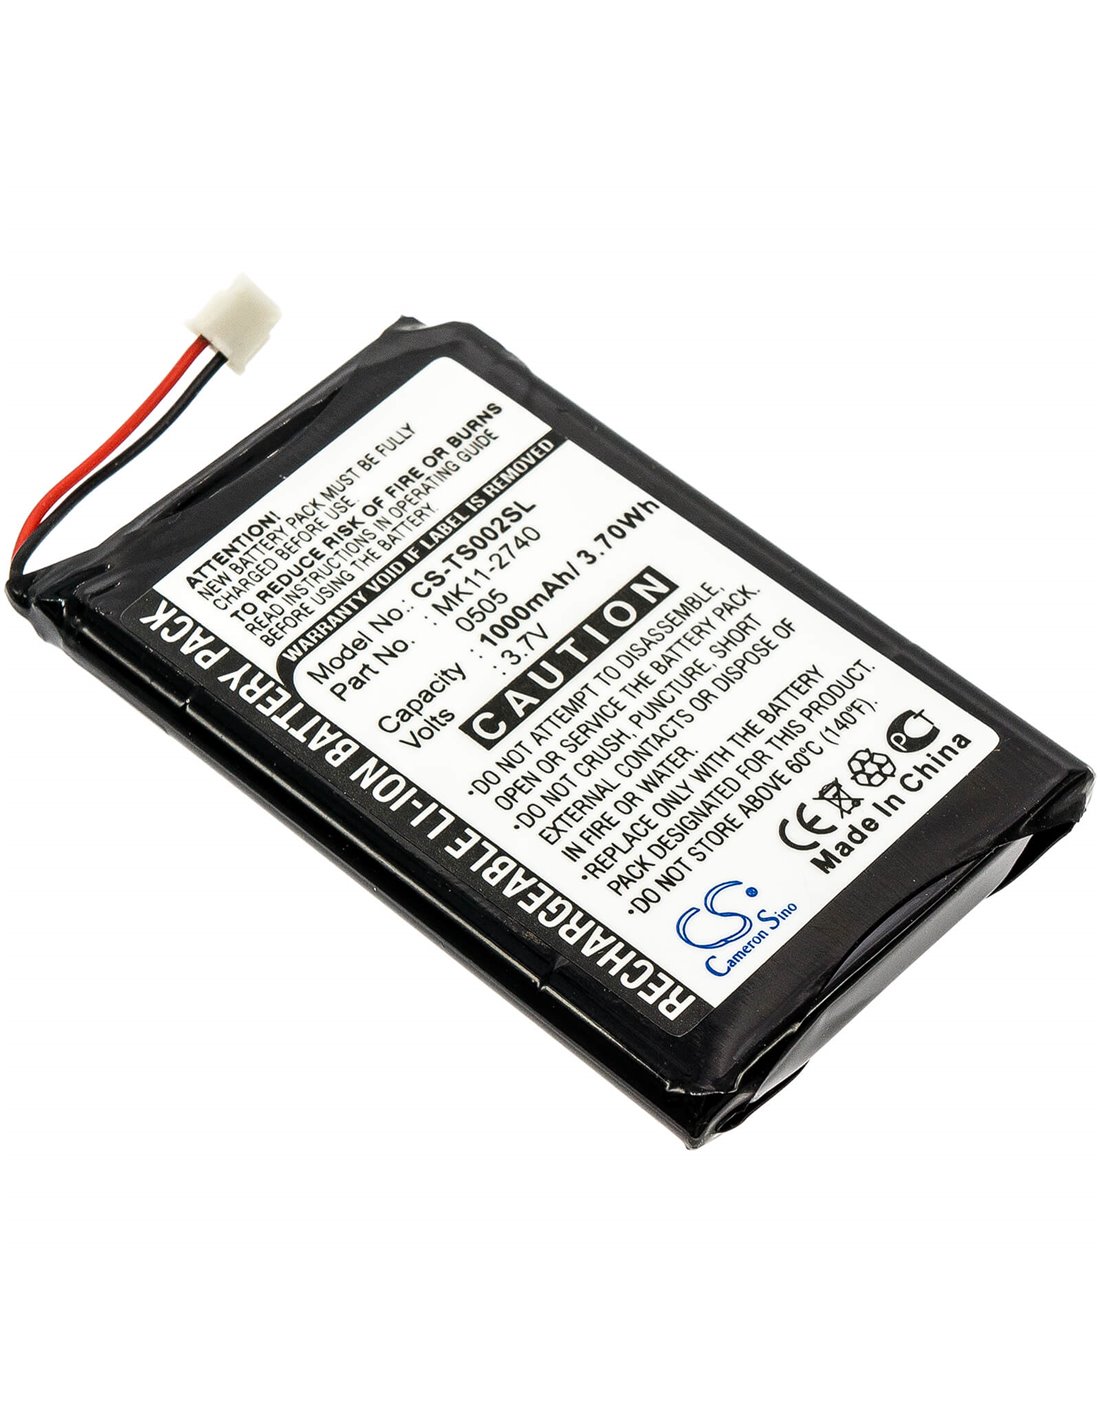 Battery for Toshiba, Gigabeat Megf10, Gigabeat Megf20, Gigabeat Megf40 3.7V, 1000mAh - 3.70Wh